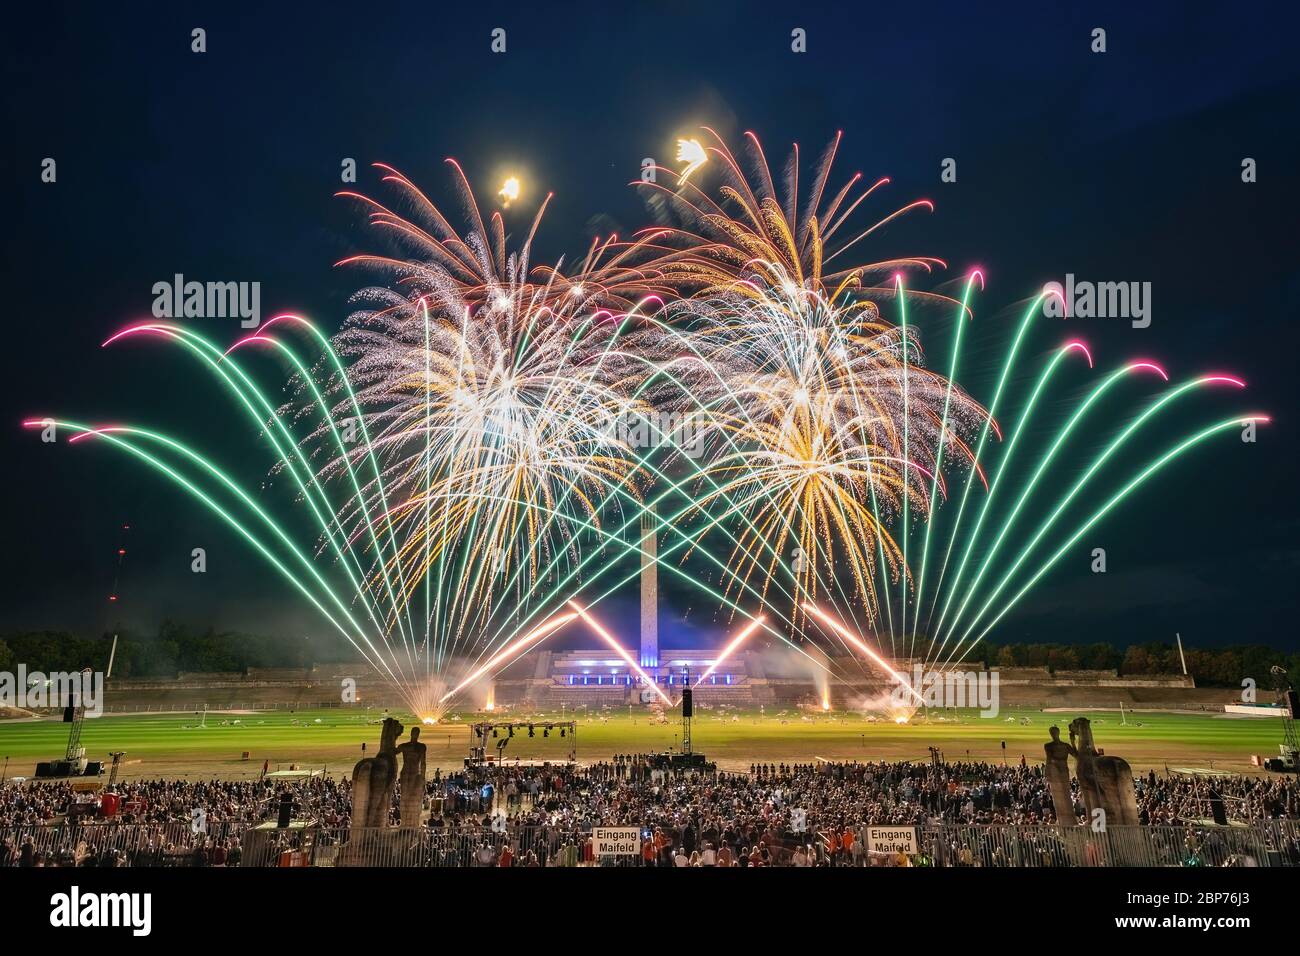 Hamex (Slowenien), fuochi d'artificio al livello più alto, mostra della Koenigsklasse al Pyronale 2019 sulla Maifeld di fronte allo Stadio Olimpico di Berlino. Foto Stock